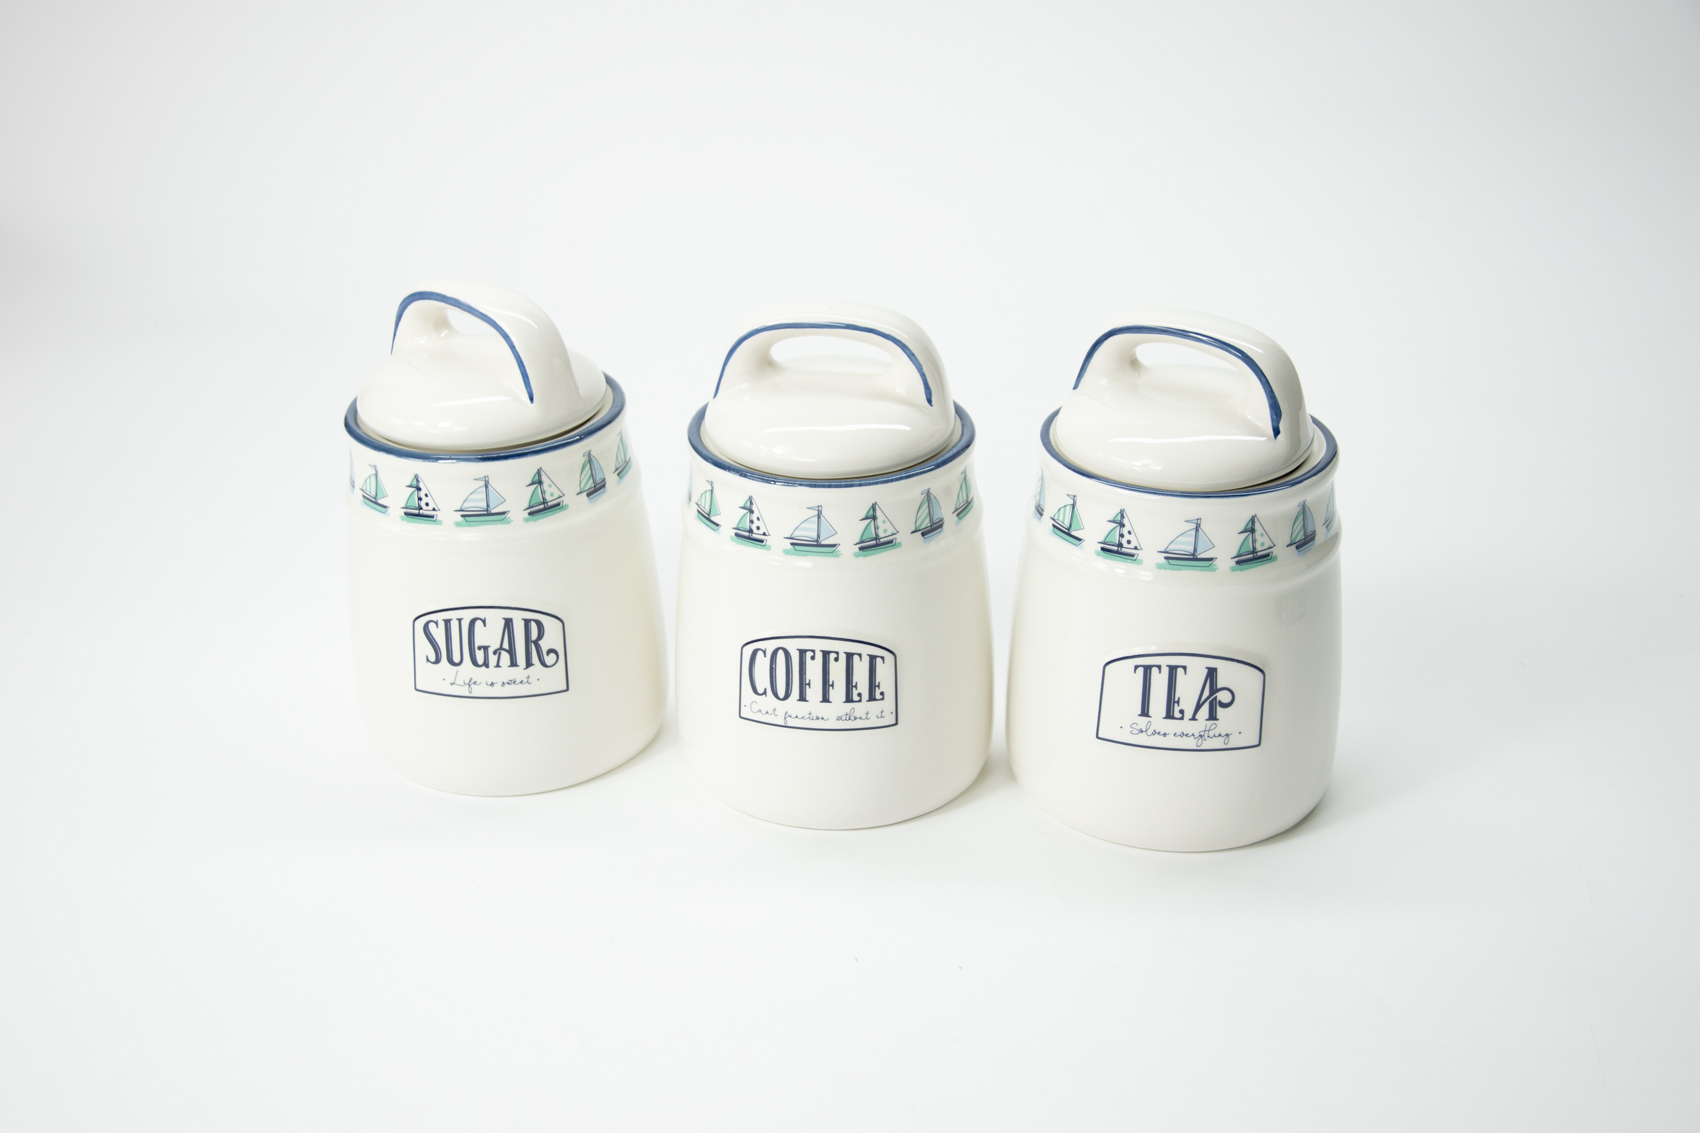 Kaffee-, Tee- & Zuckerdose 3er Set Keramik Maritim Boot Landhausstil